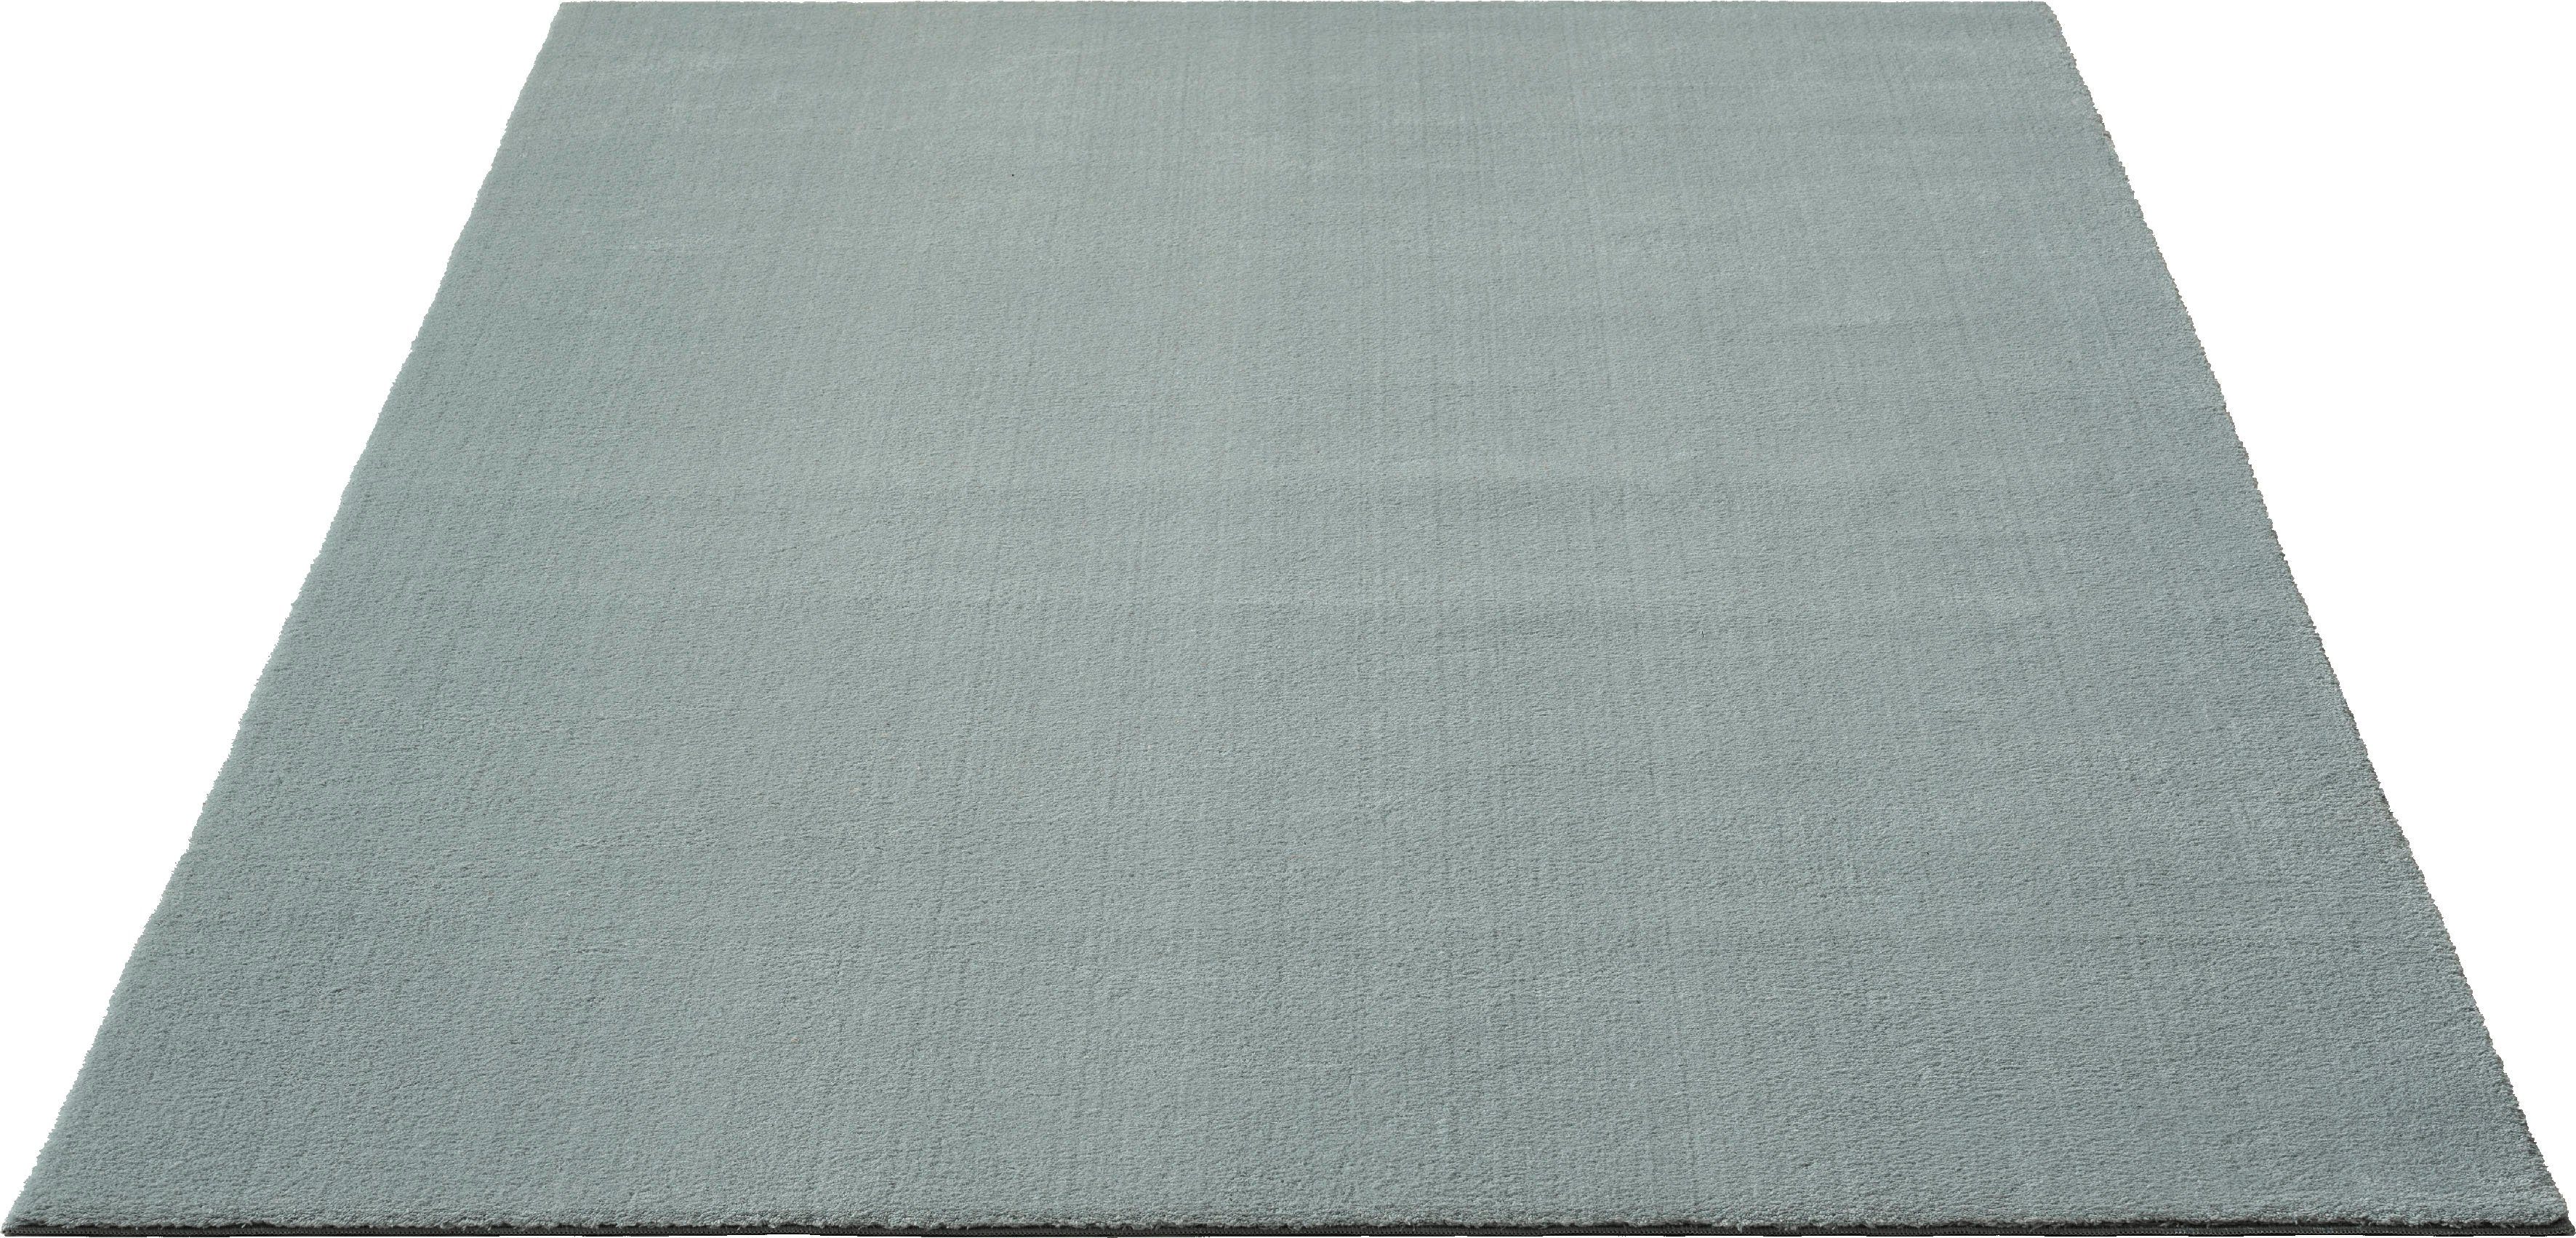 Teppich Loft 37, Kunstfellteppich, merinos, rechteckig, Höhe: 19 mm, weich und kuschelig, Fell Haptik, Anti-Rutsch-Unterseite, waschbar blau